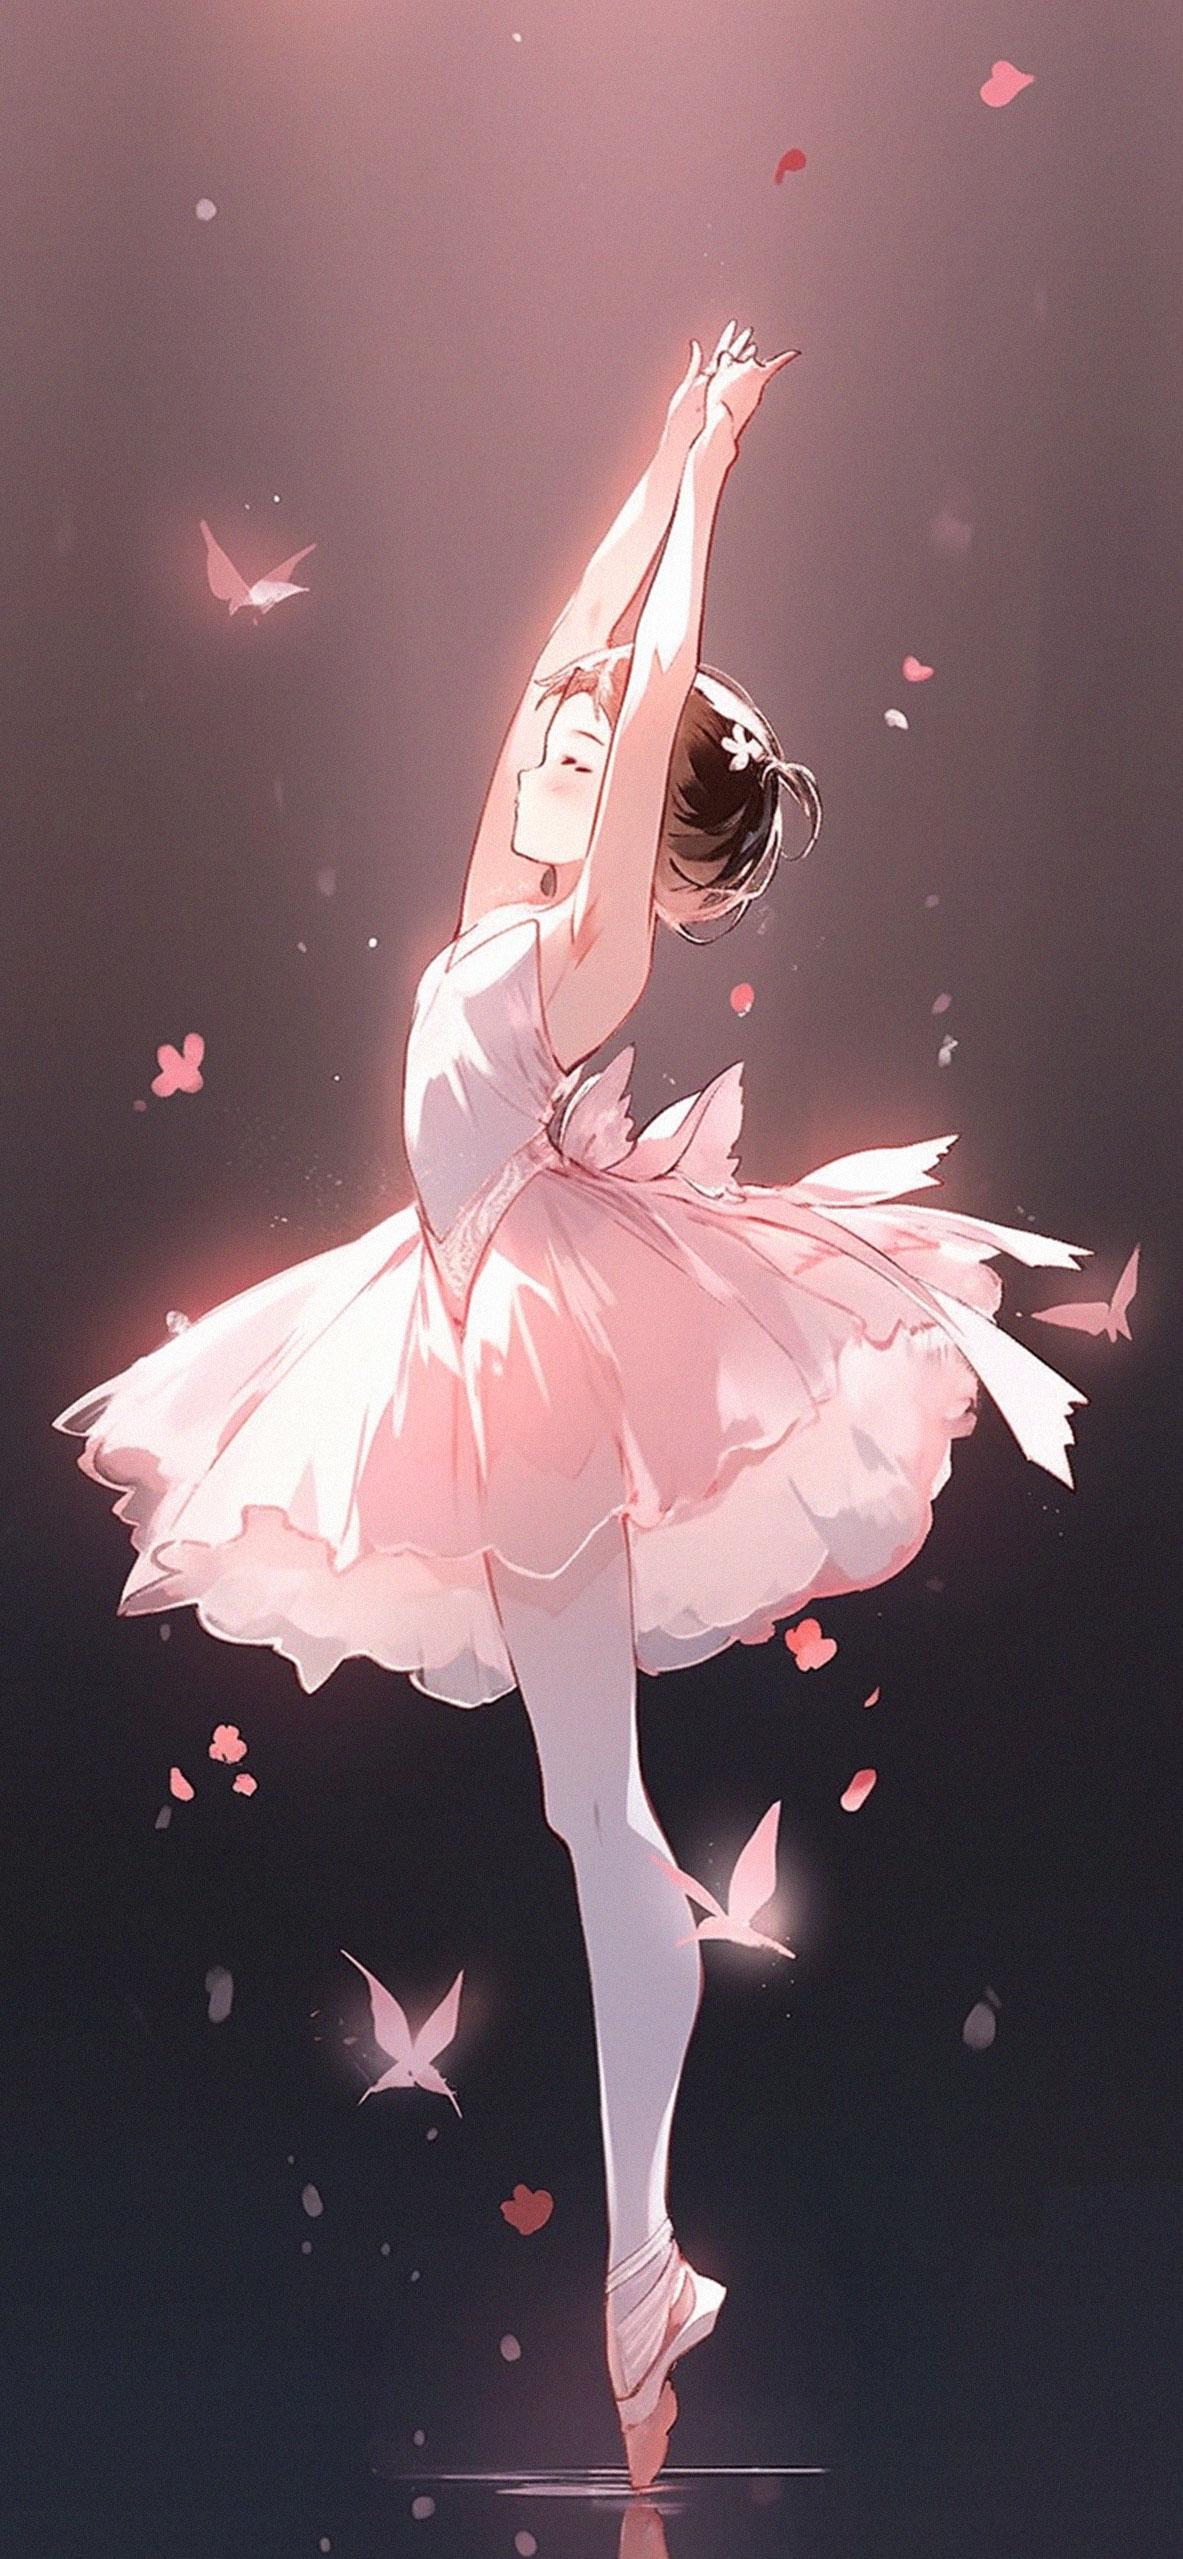 Cute Ballerina Girl Anime Wallpapers Cute Anime Girl Wallpaper 4k